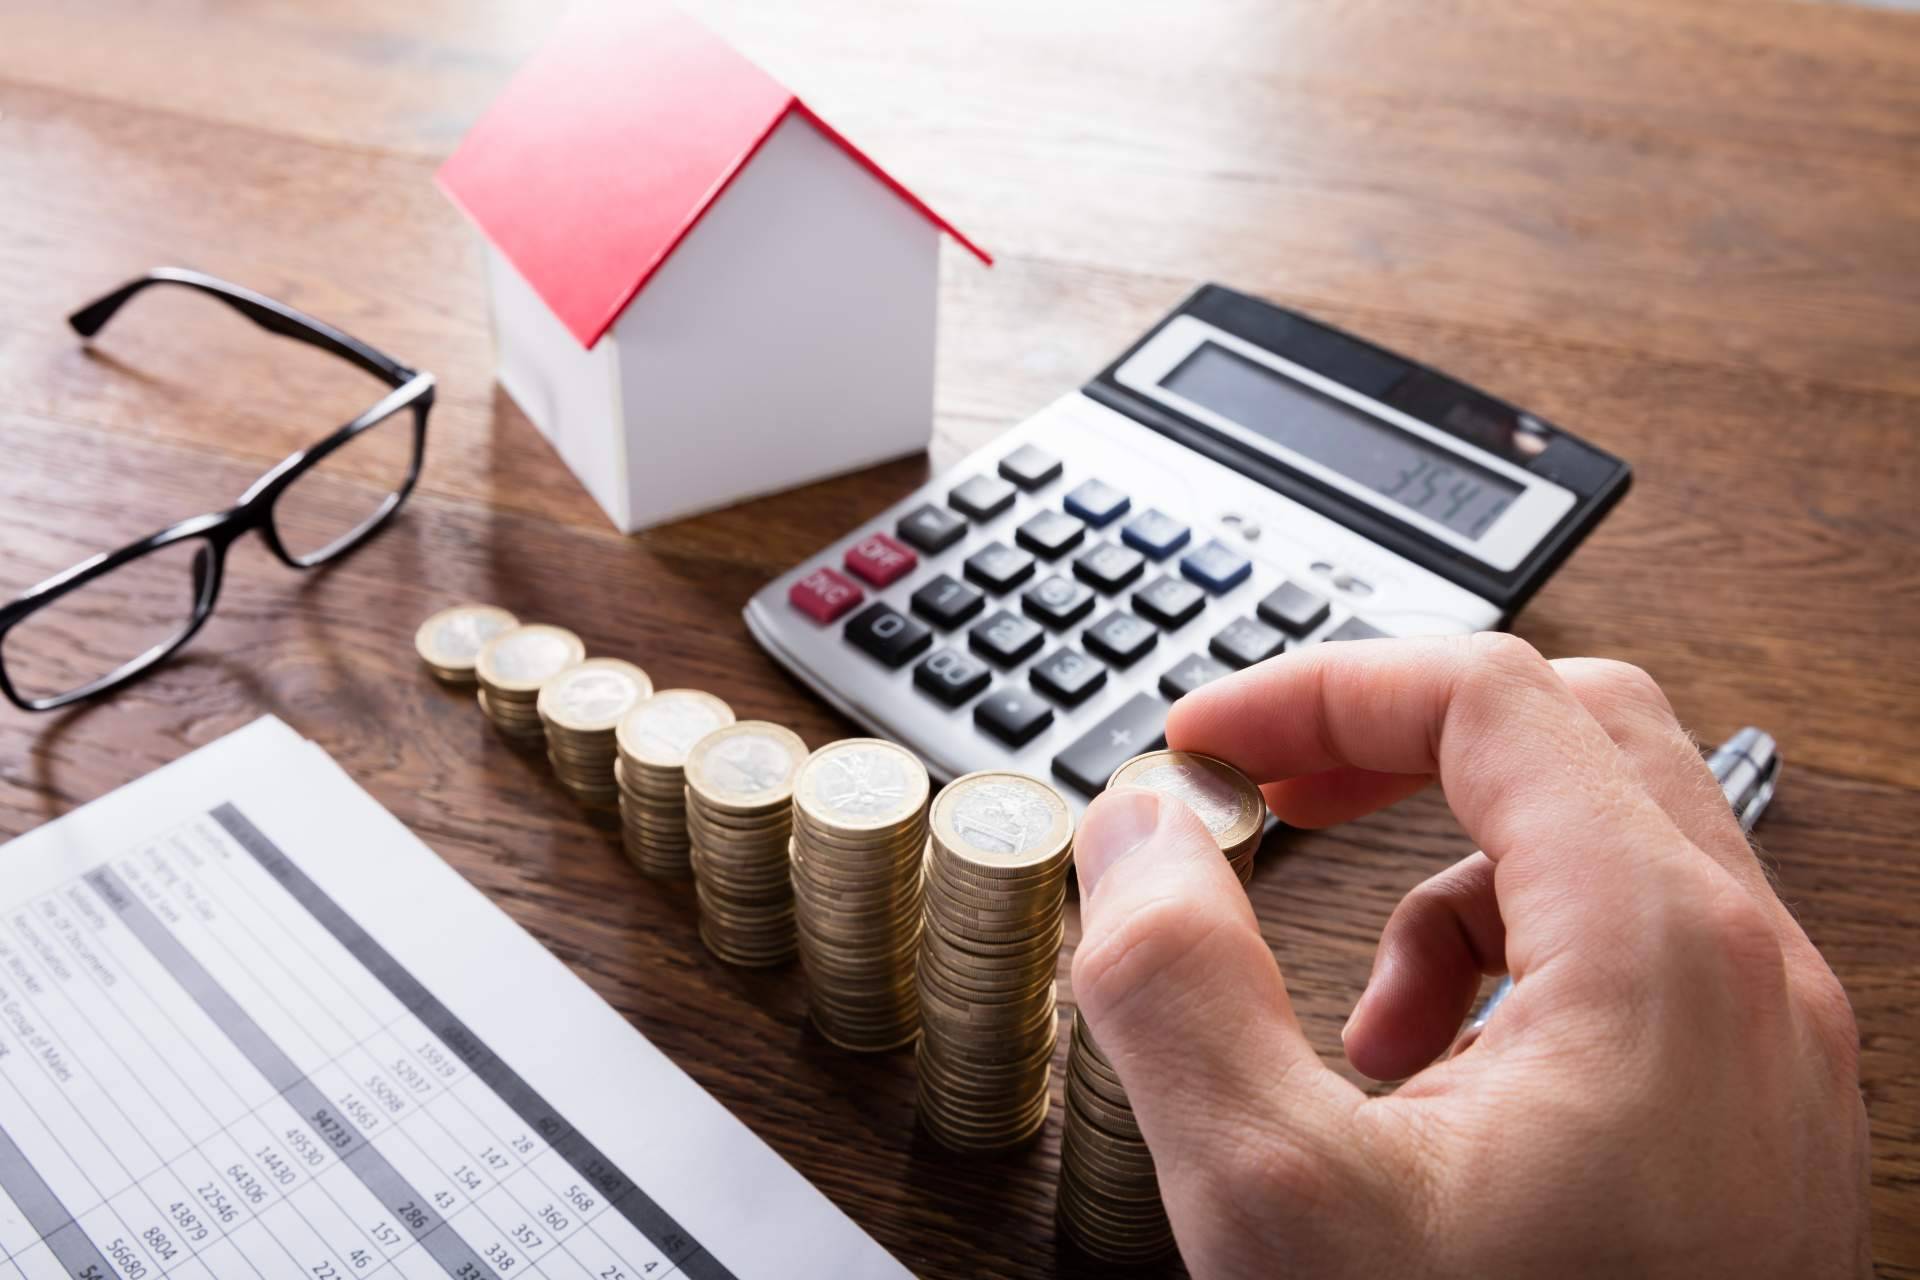 deHipotecas brinda servicios de asesor hipotecario para ayudar a sus clientes a incrementar las posibilidades de obtener un préstamo